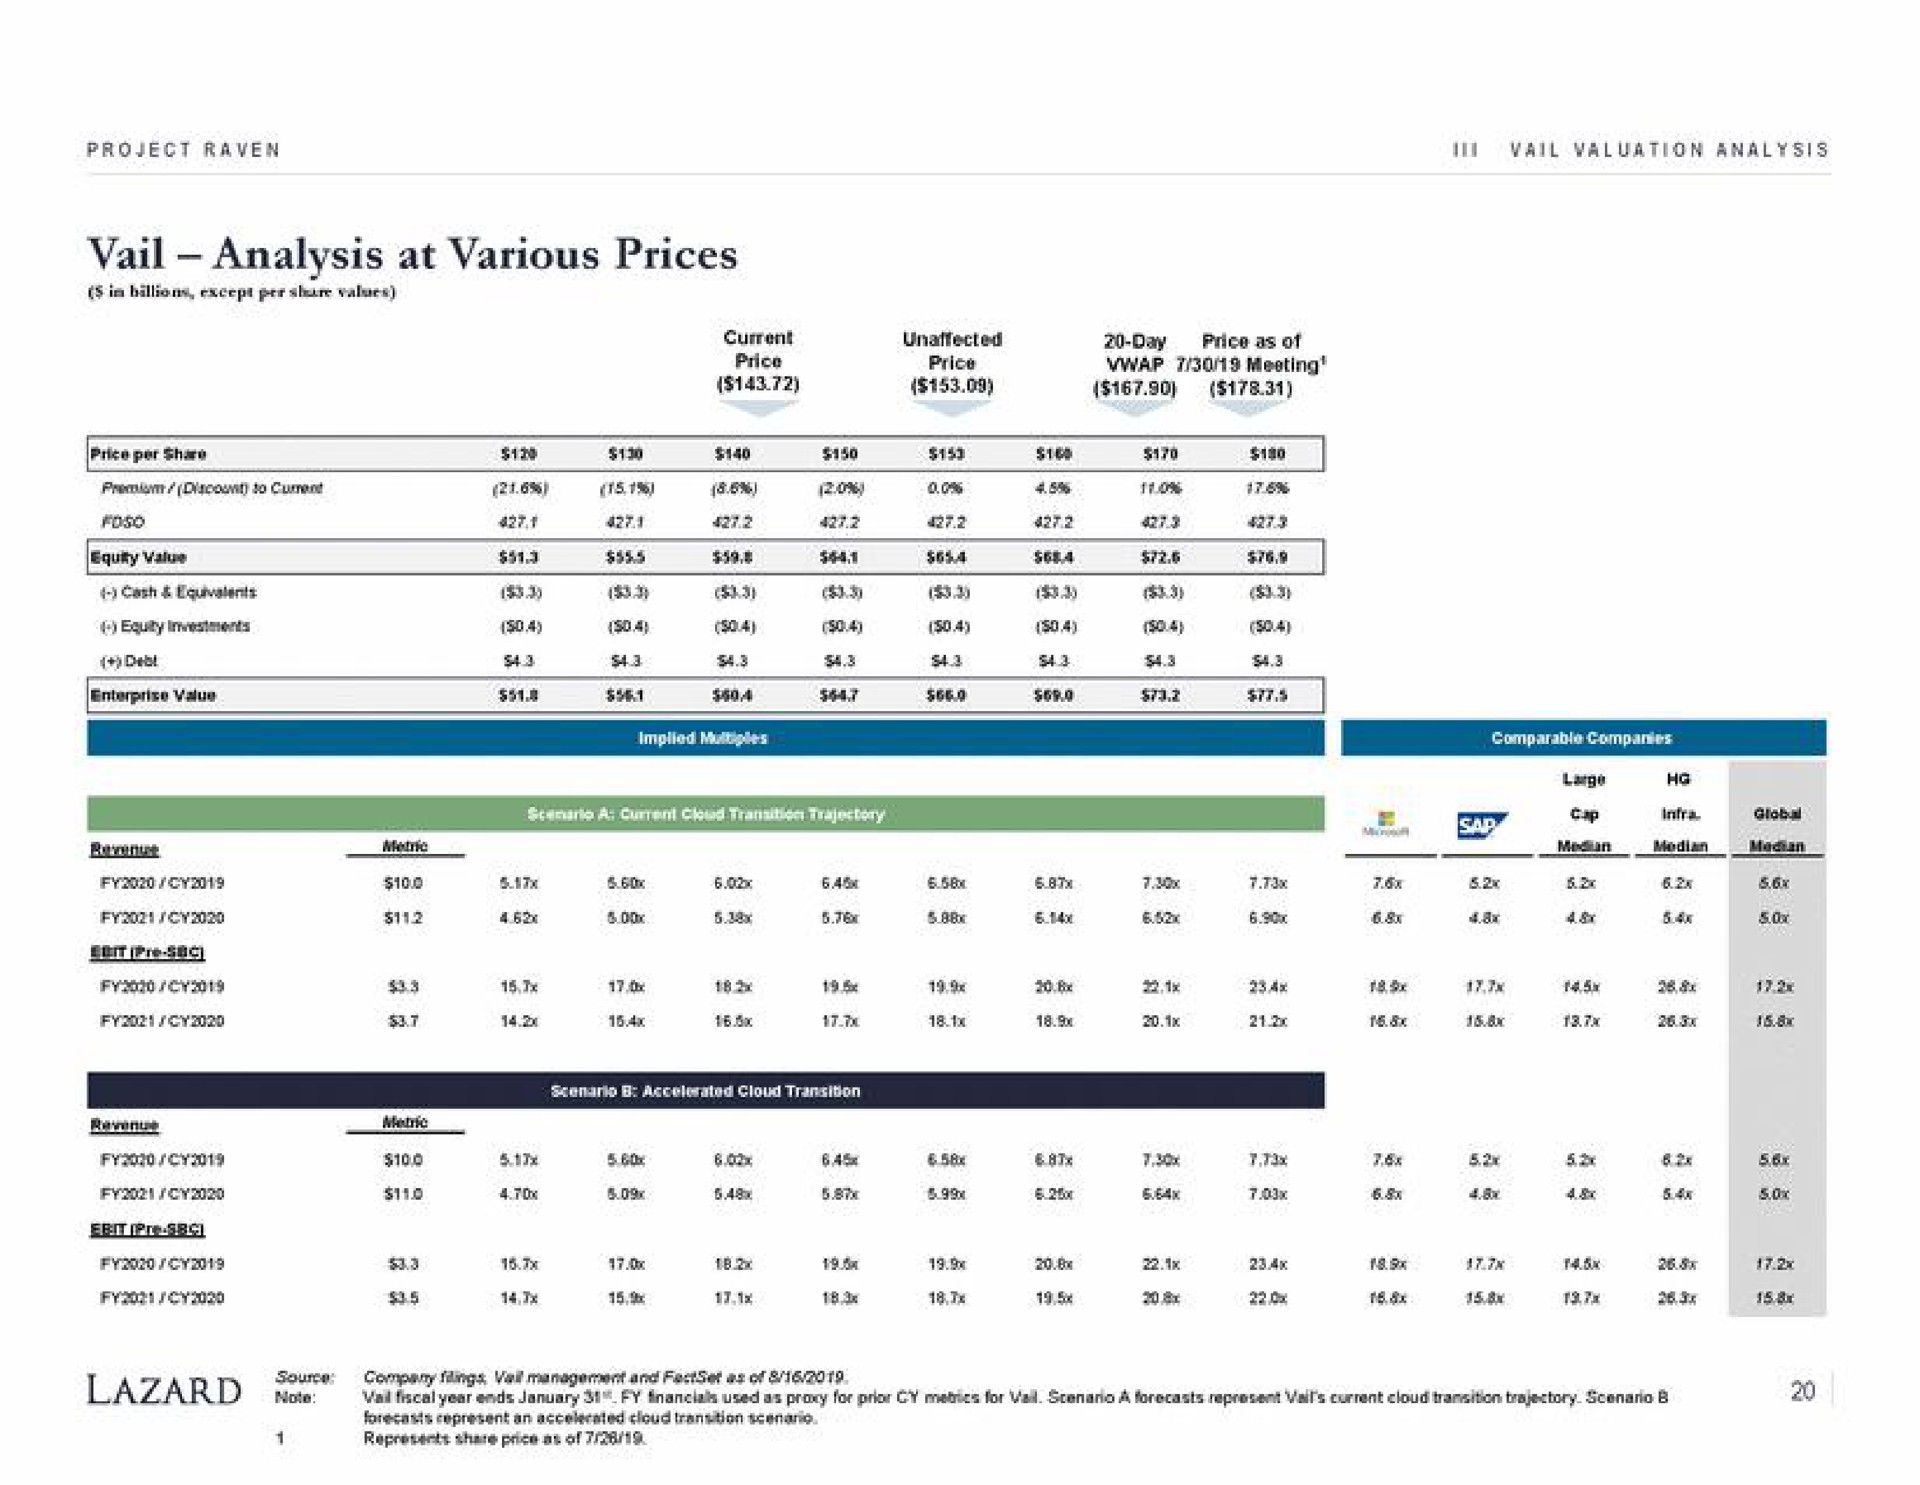 vail analysis at various prices | Lazard